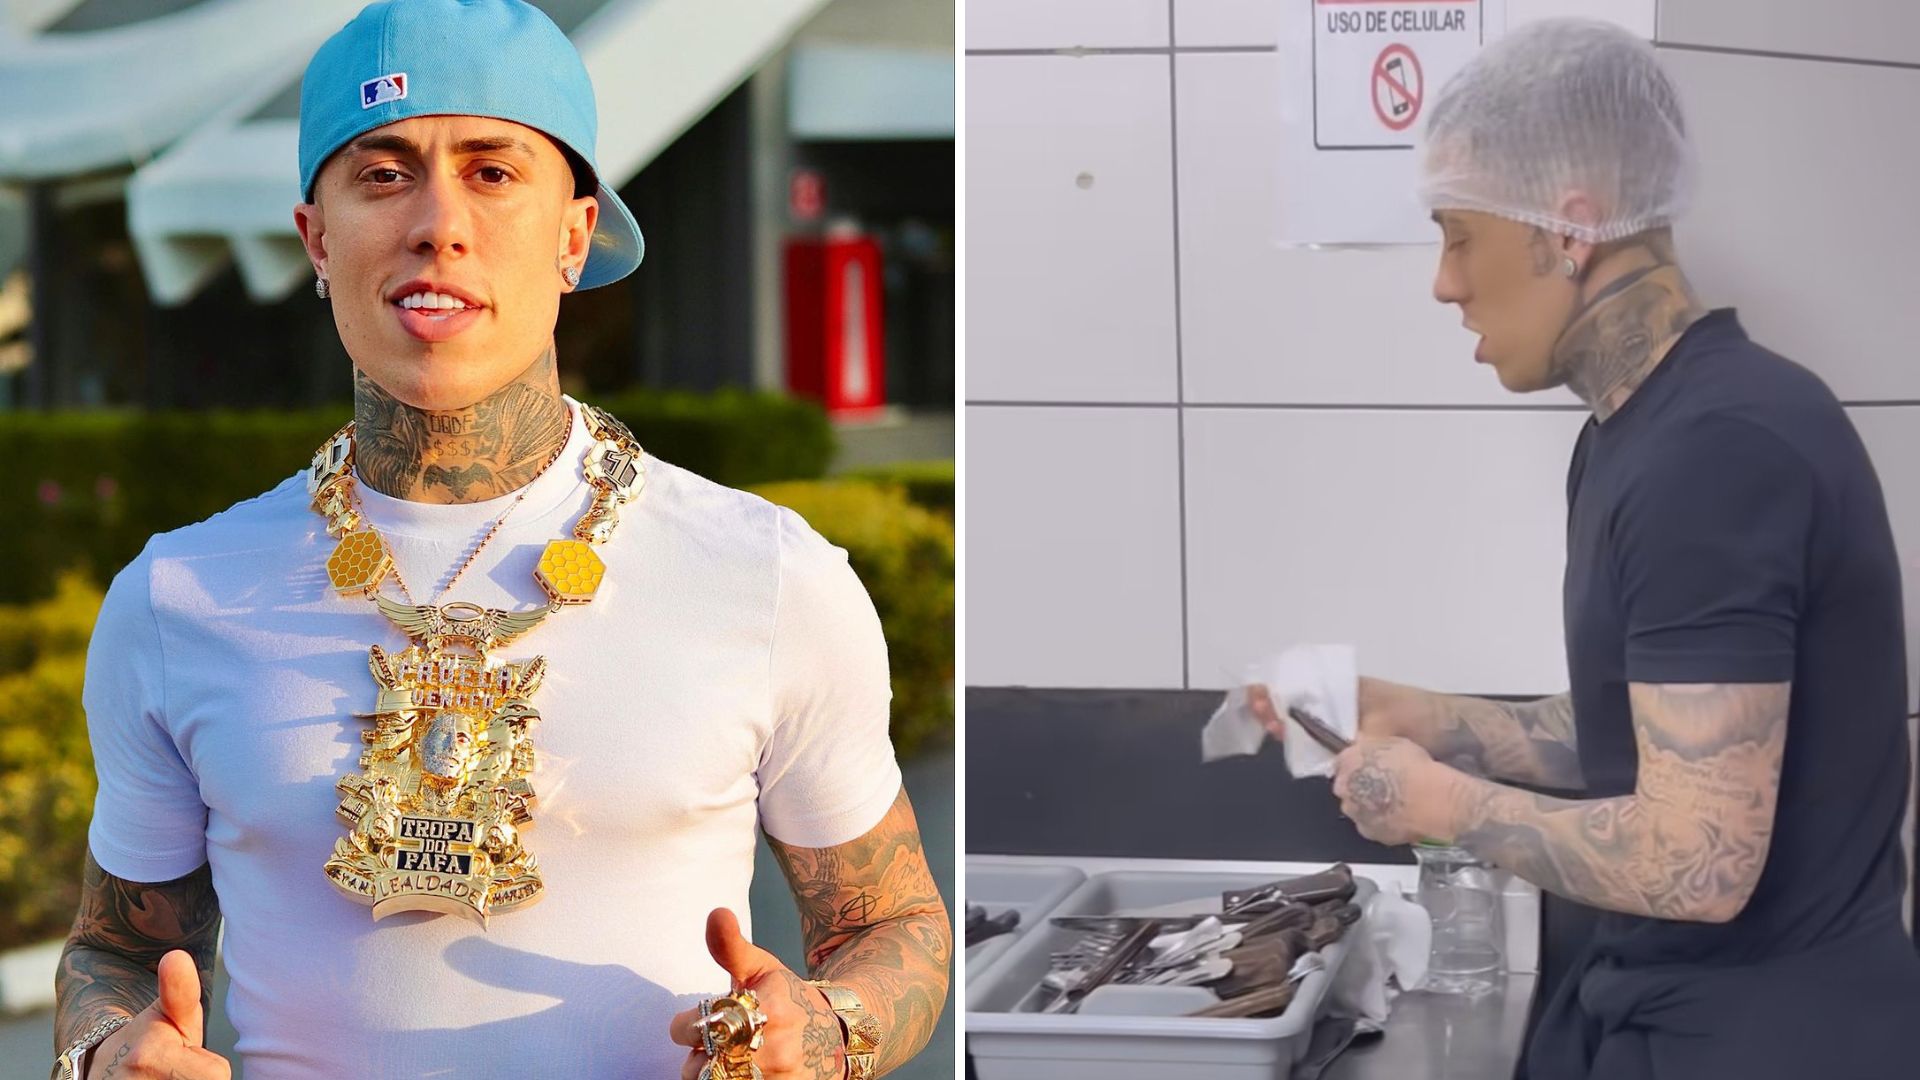 Faturando R$ 4 milhões por mês, MC Daniel foi humilhado ao iniciar no mundo  da música; veja antes e depois